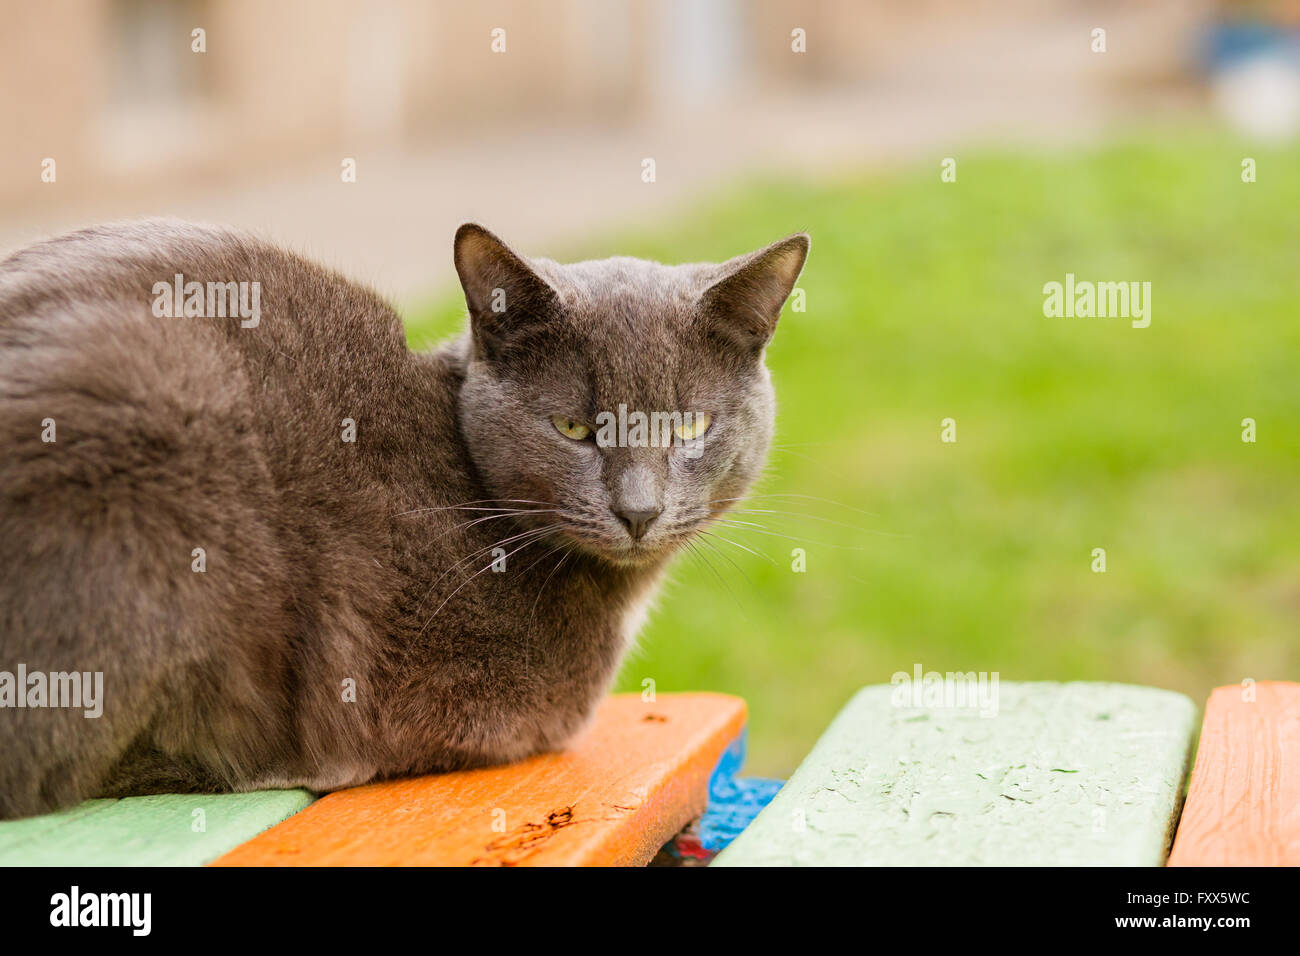 Portrait de chat gris indifférent looking at camera Banque D'Images